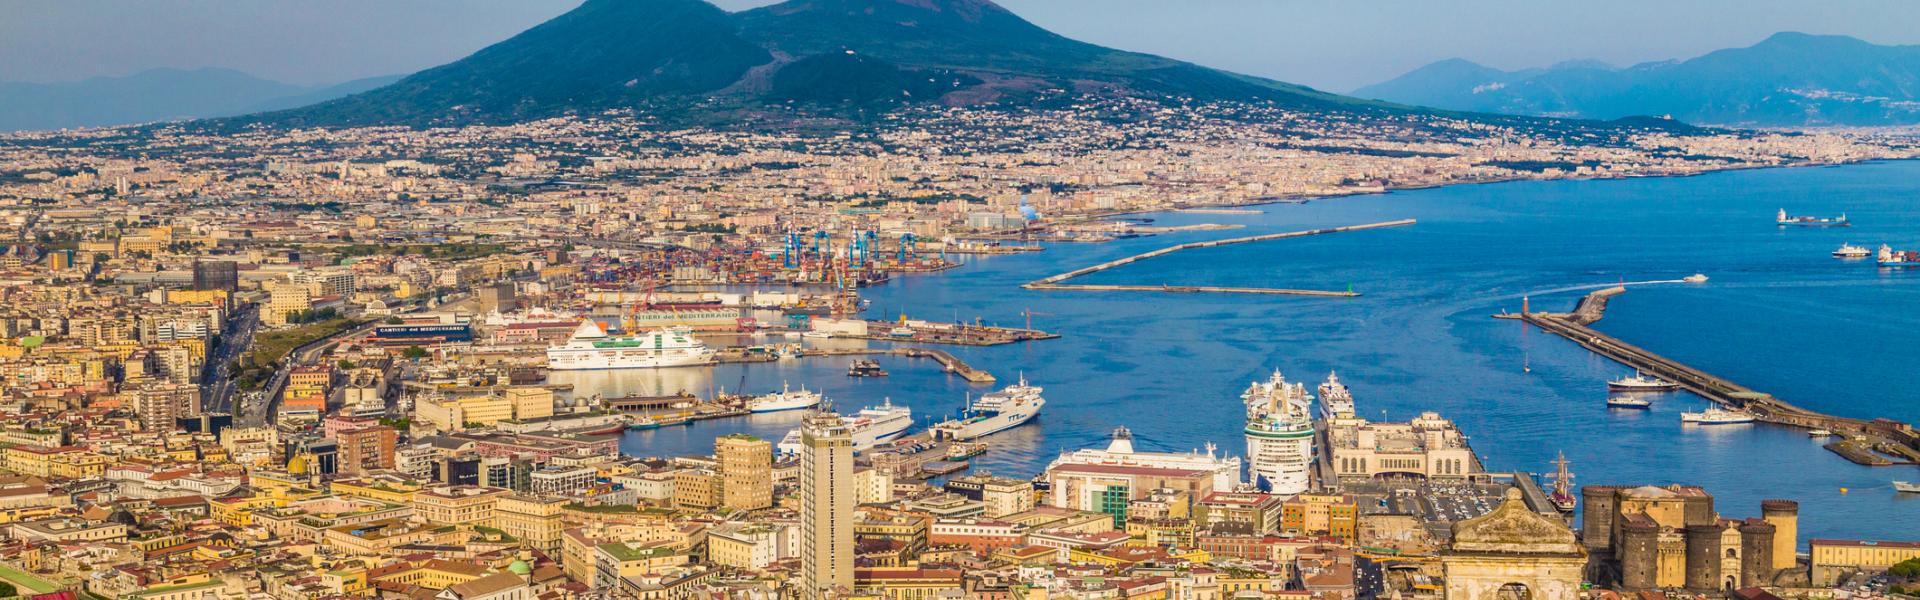 Case vacanze e appartamenti a Napoli e provincia in affitto - CaseVacanza.it